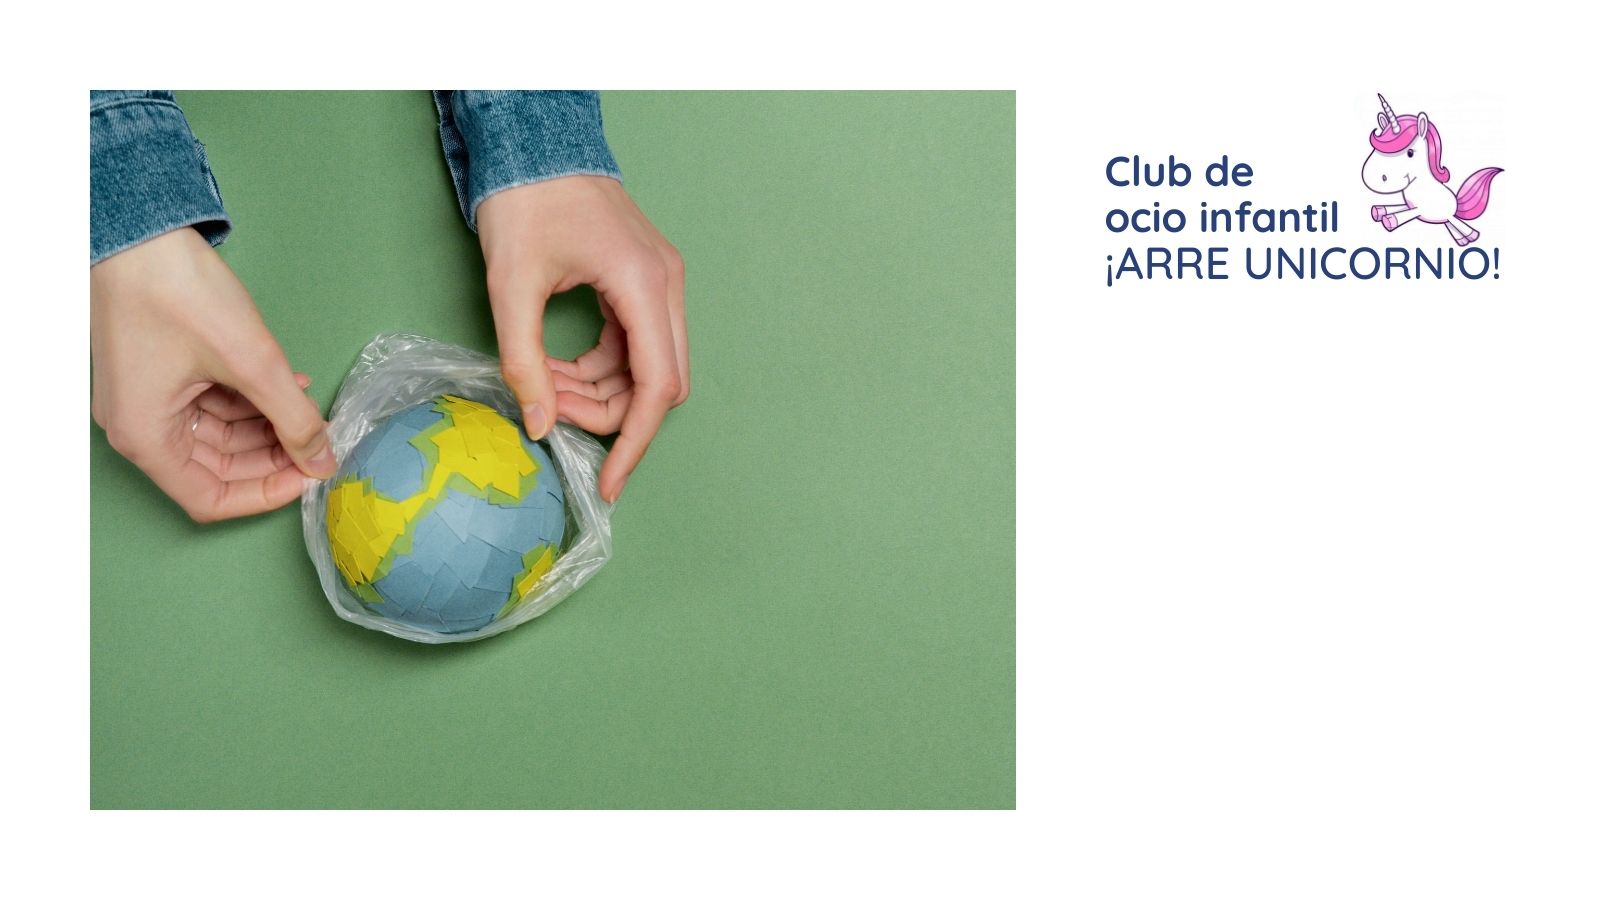 Club de ocio infantil ¡ARRE UNICORNIO! - Artistas del reciclaje